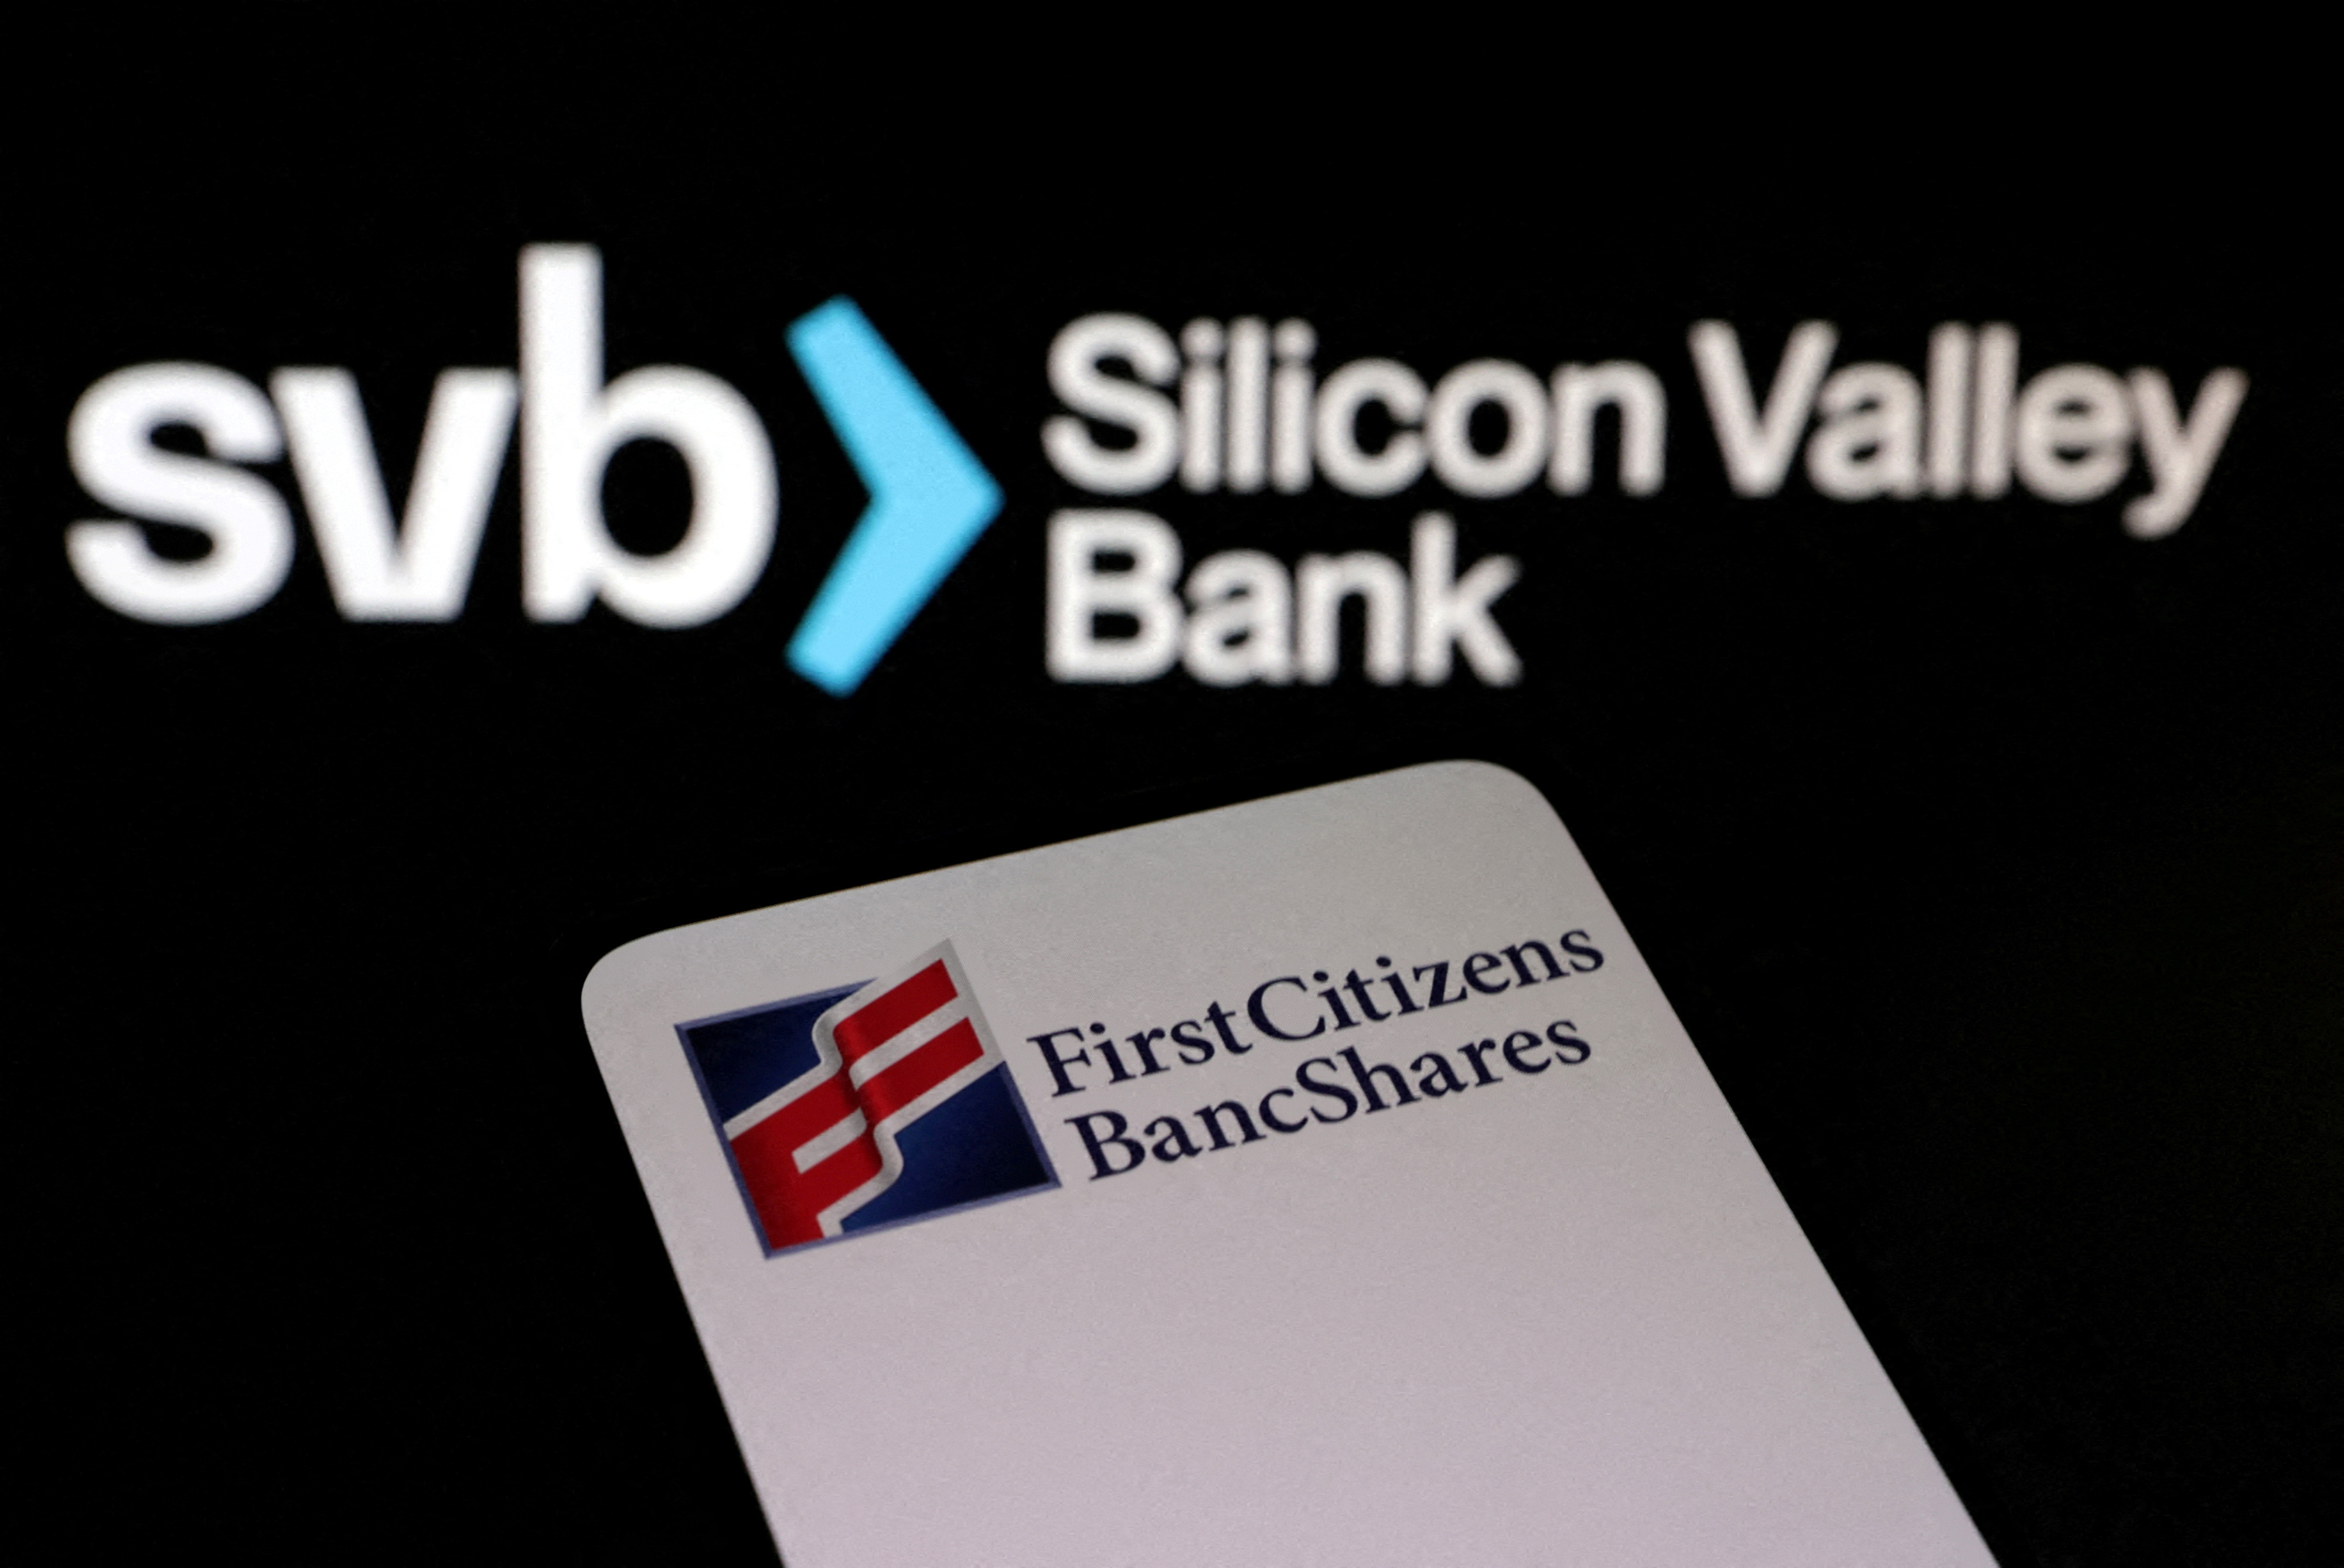 El banco First Citizens anunció la compra del Silicon Valley Bank